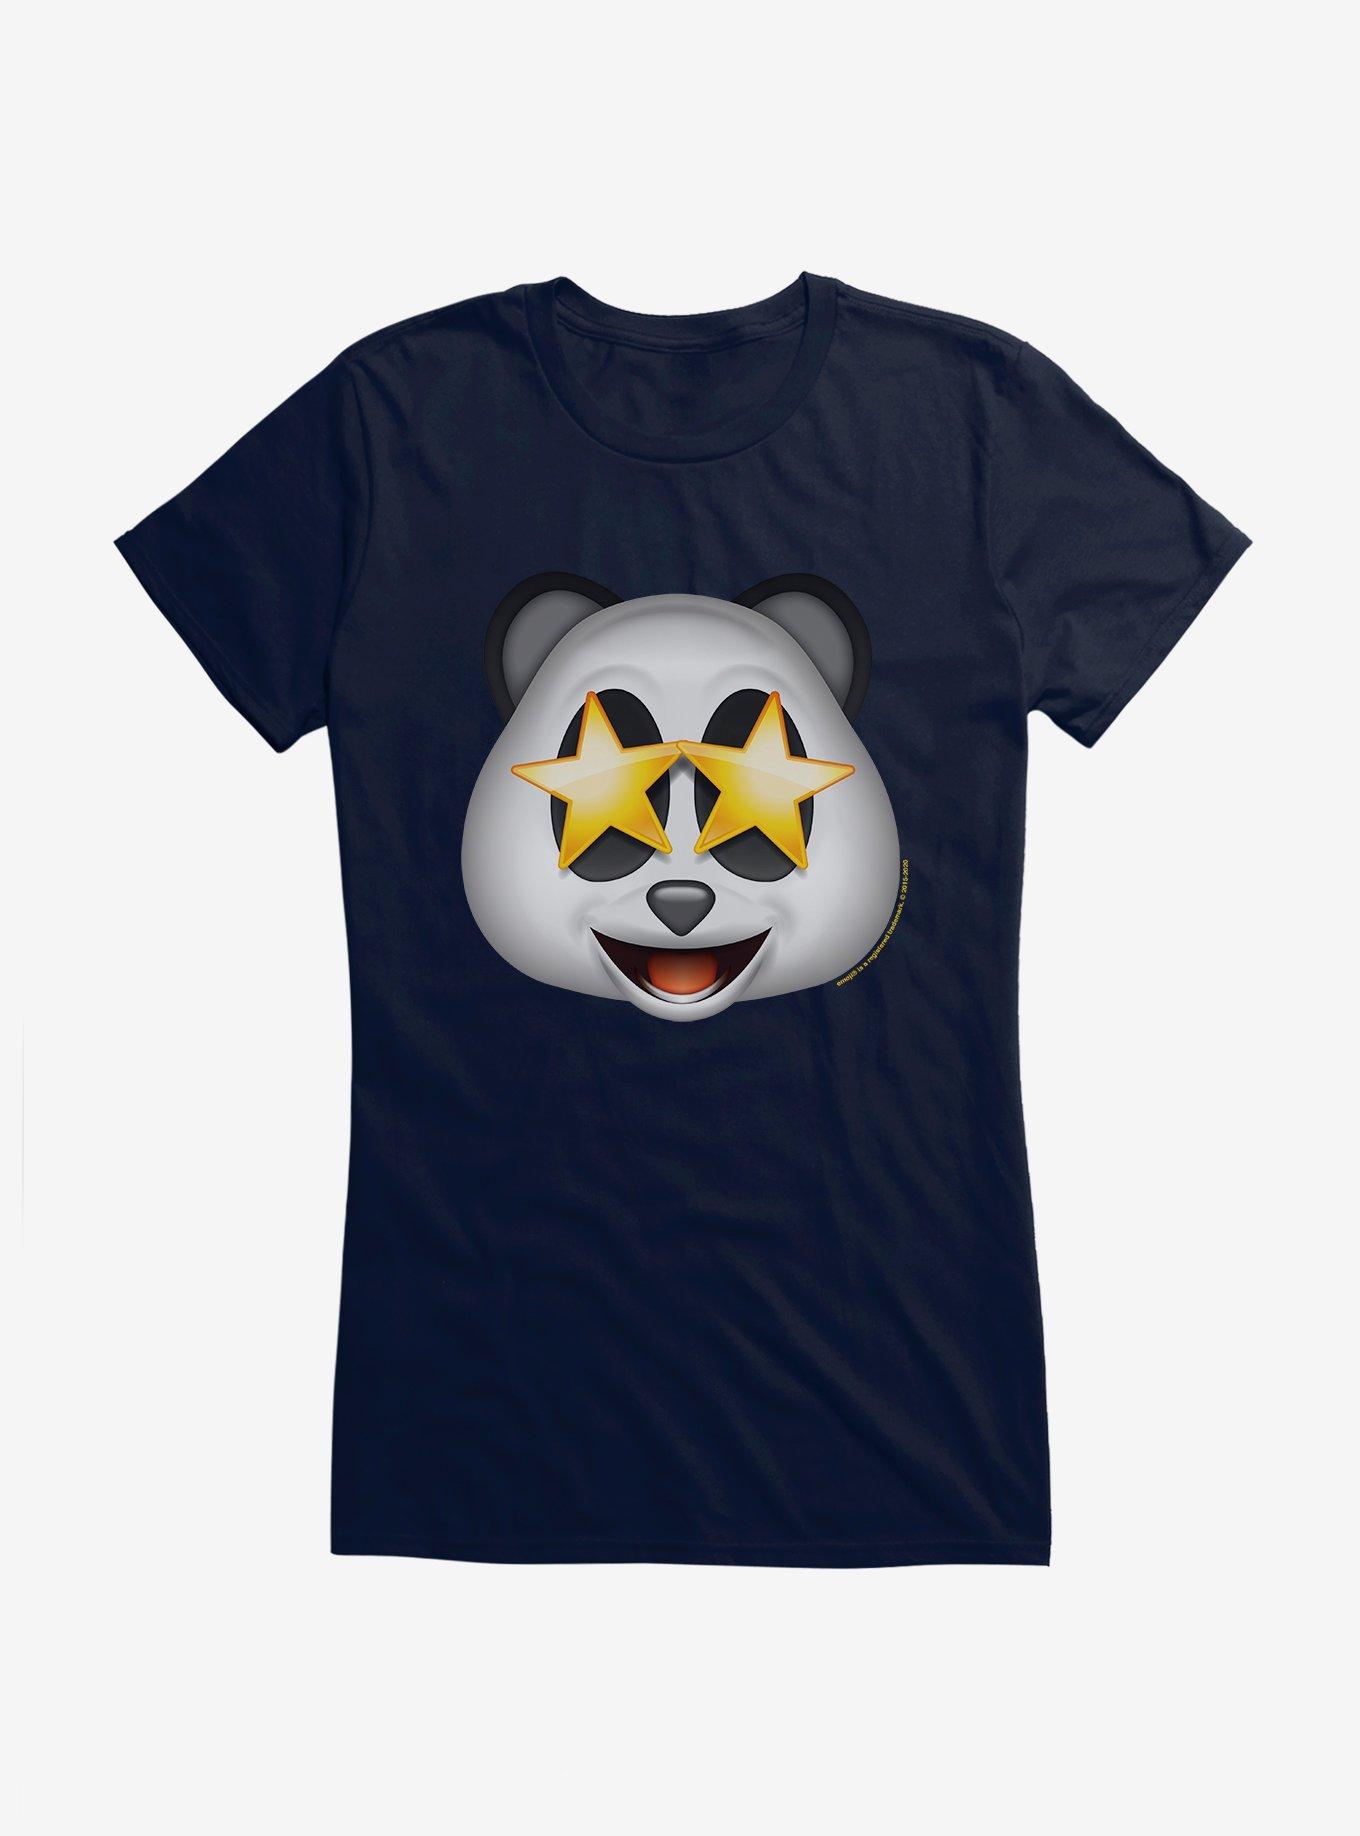 Emoji Panda Expression Wow Girls T Shirt Hot Topic